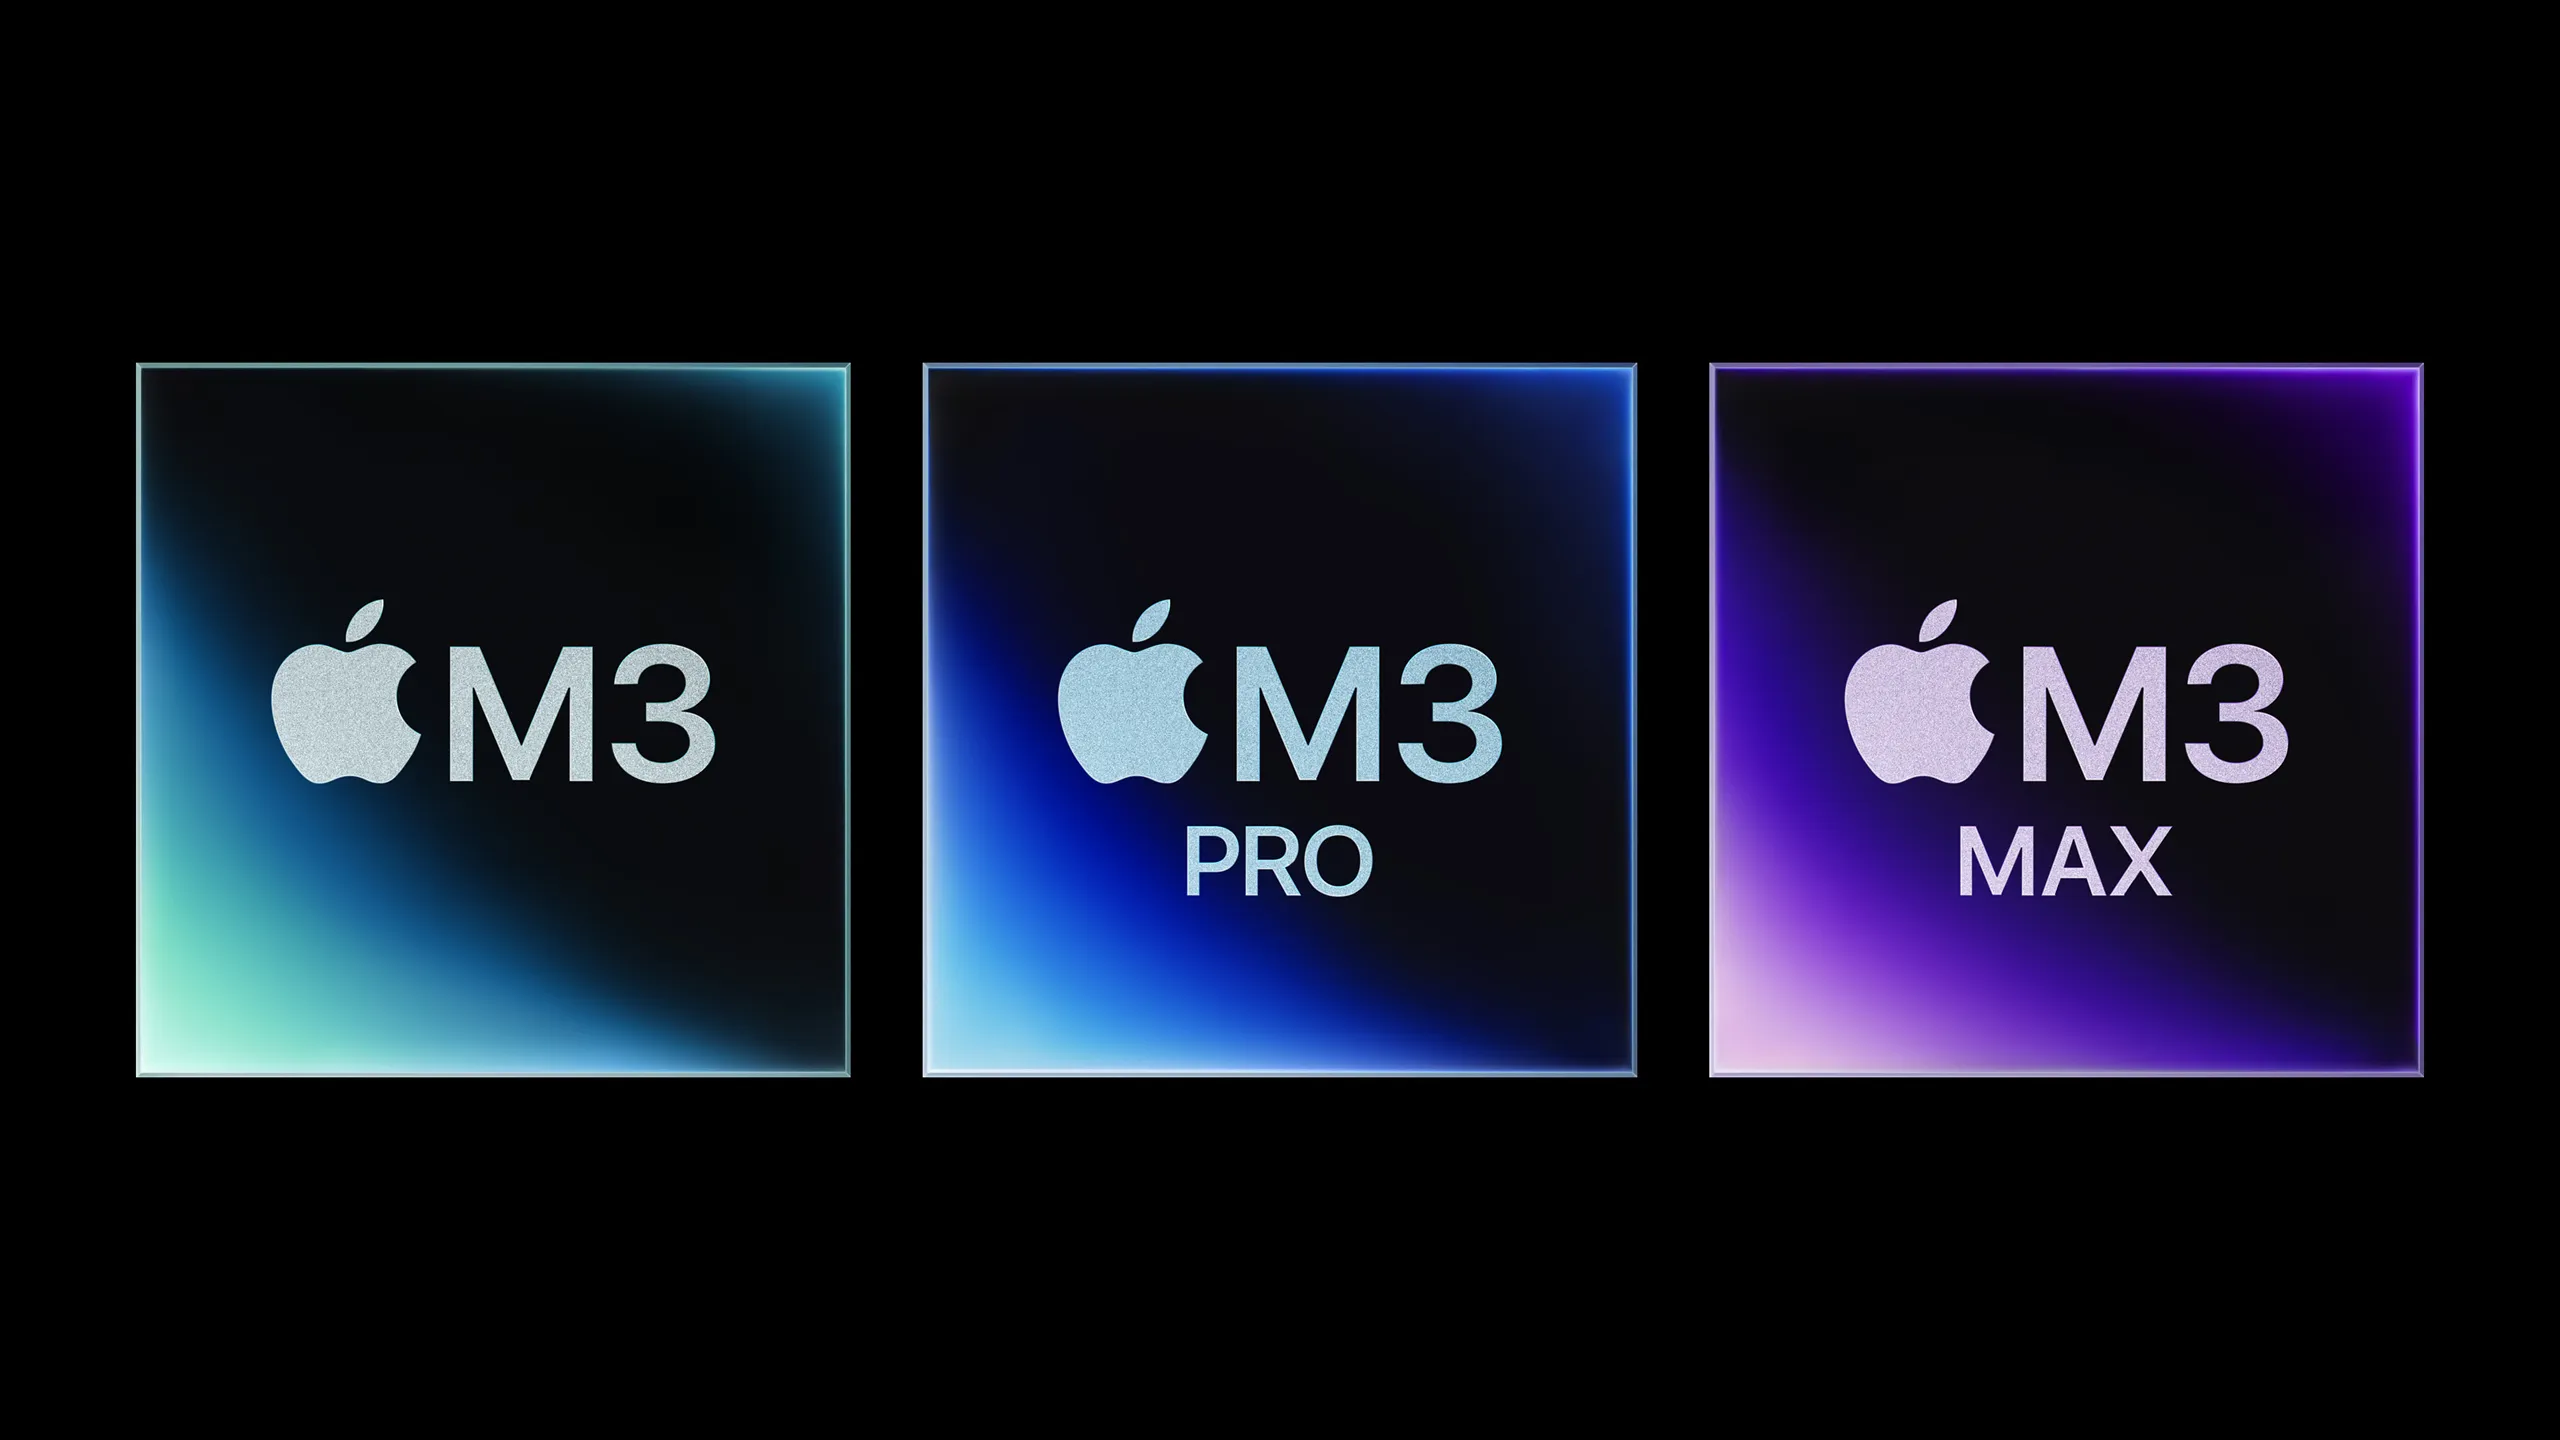 Apple tuyên bố 8GB RAM trên MacBook Pro M3 "tương tự" như 16GB RAM trên PC khác